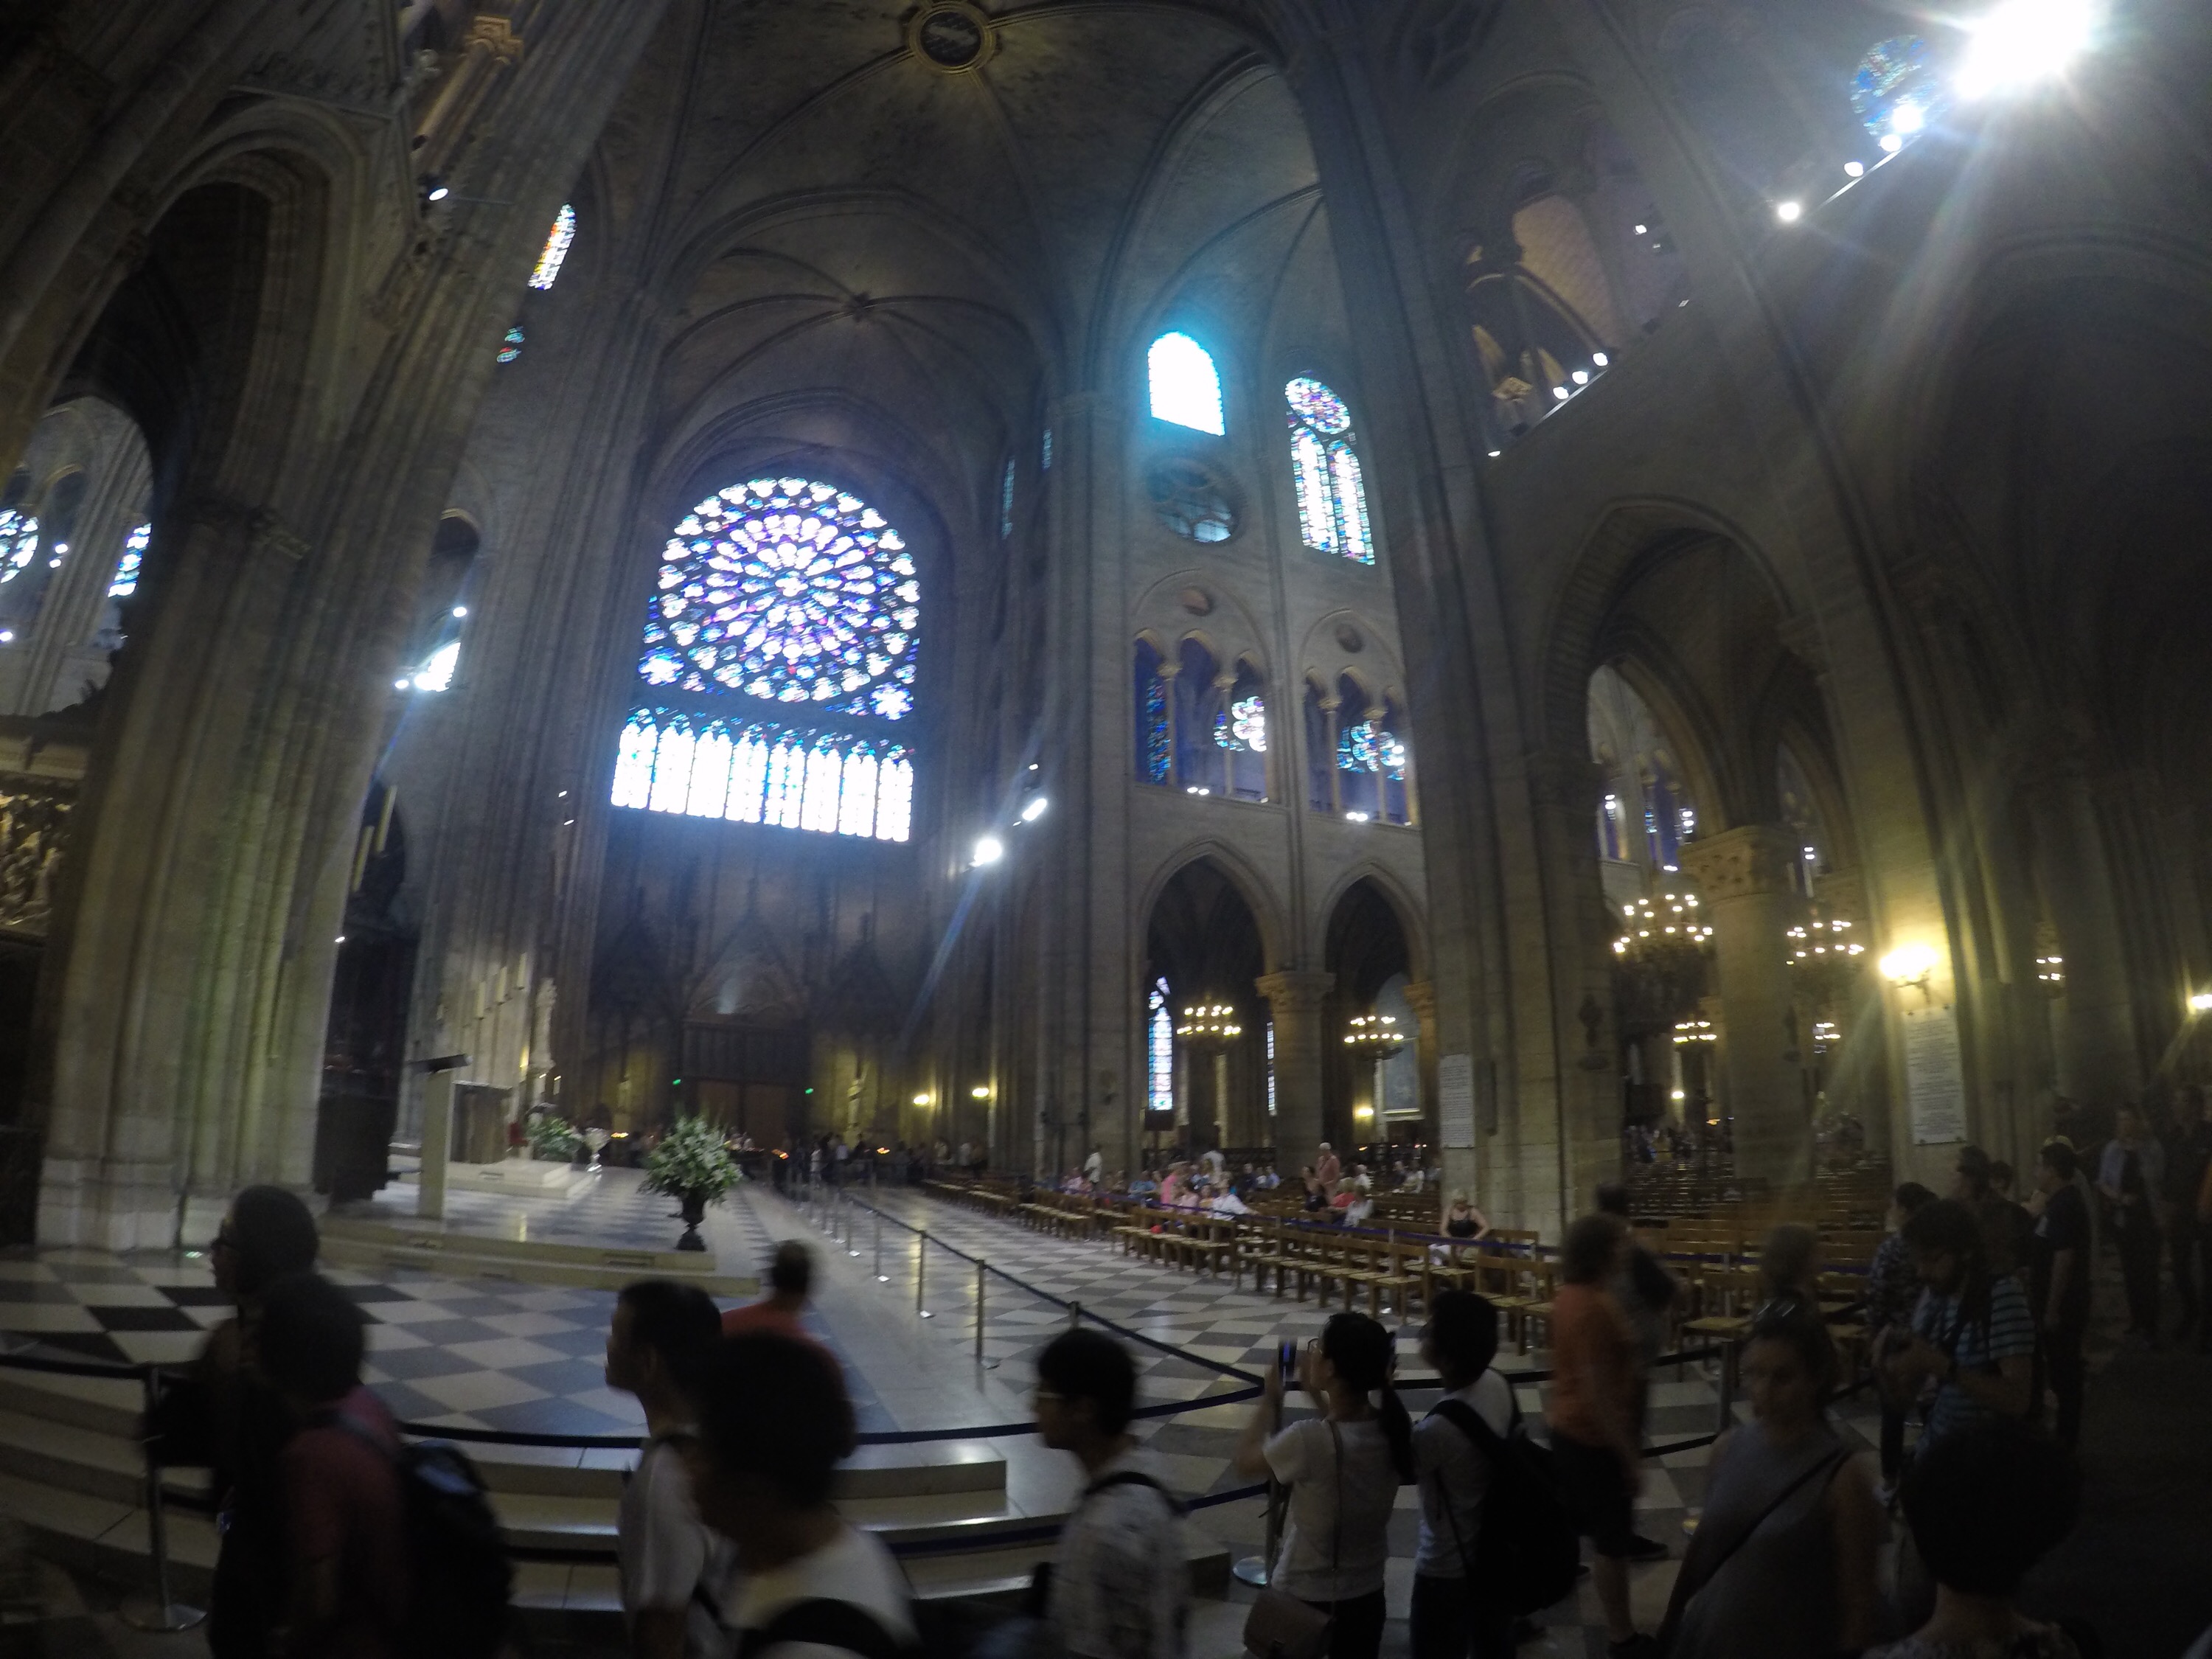 Inside Notre Dame!!!